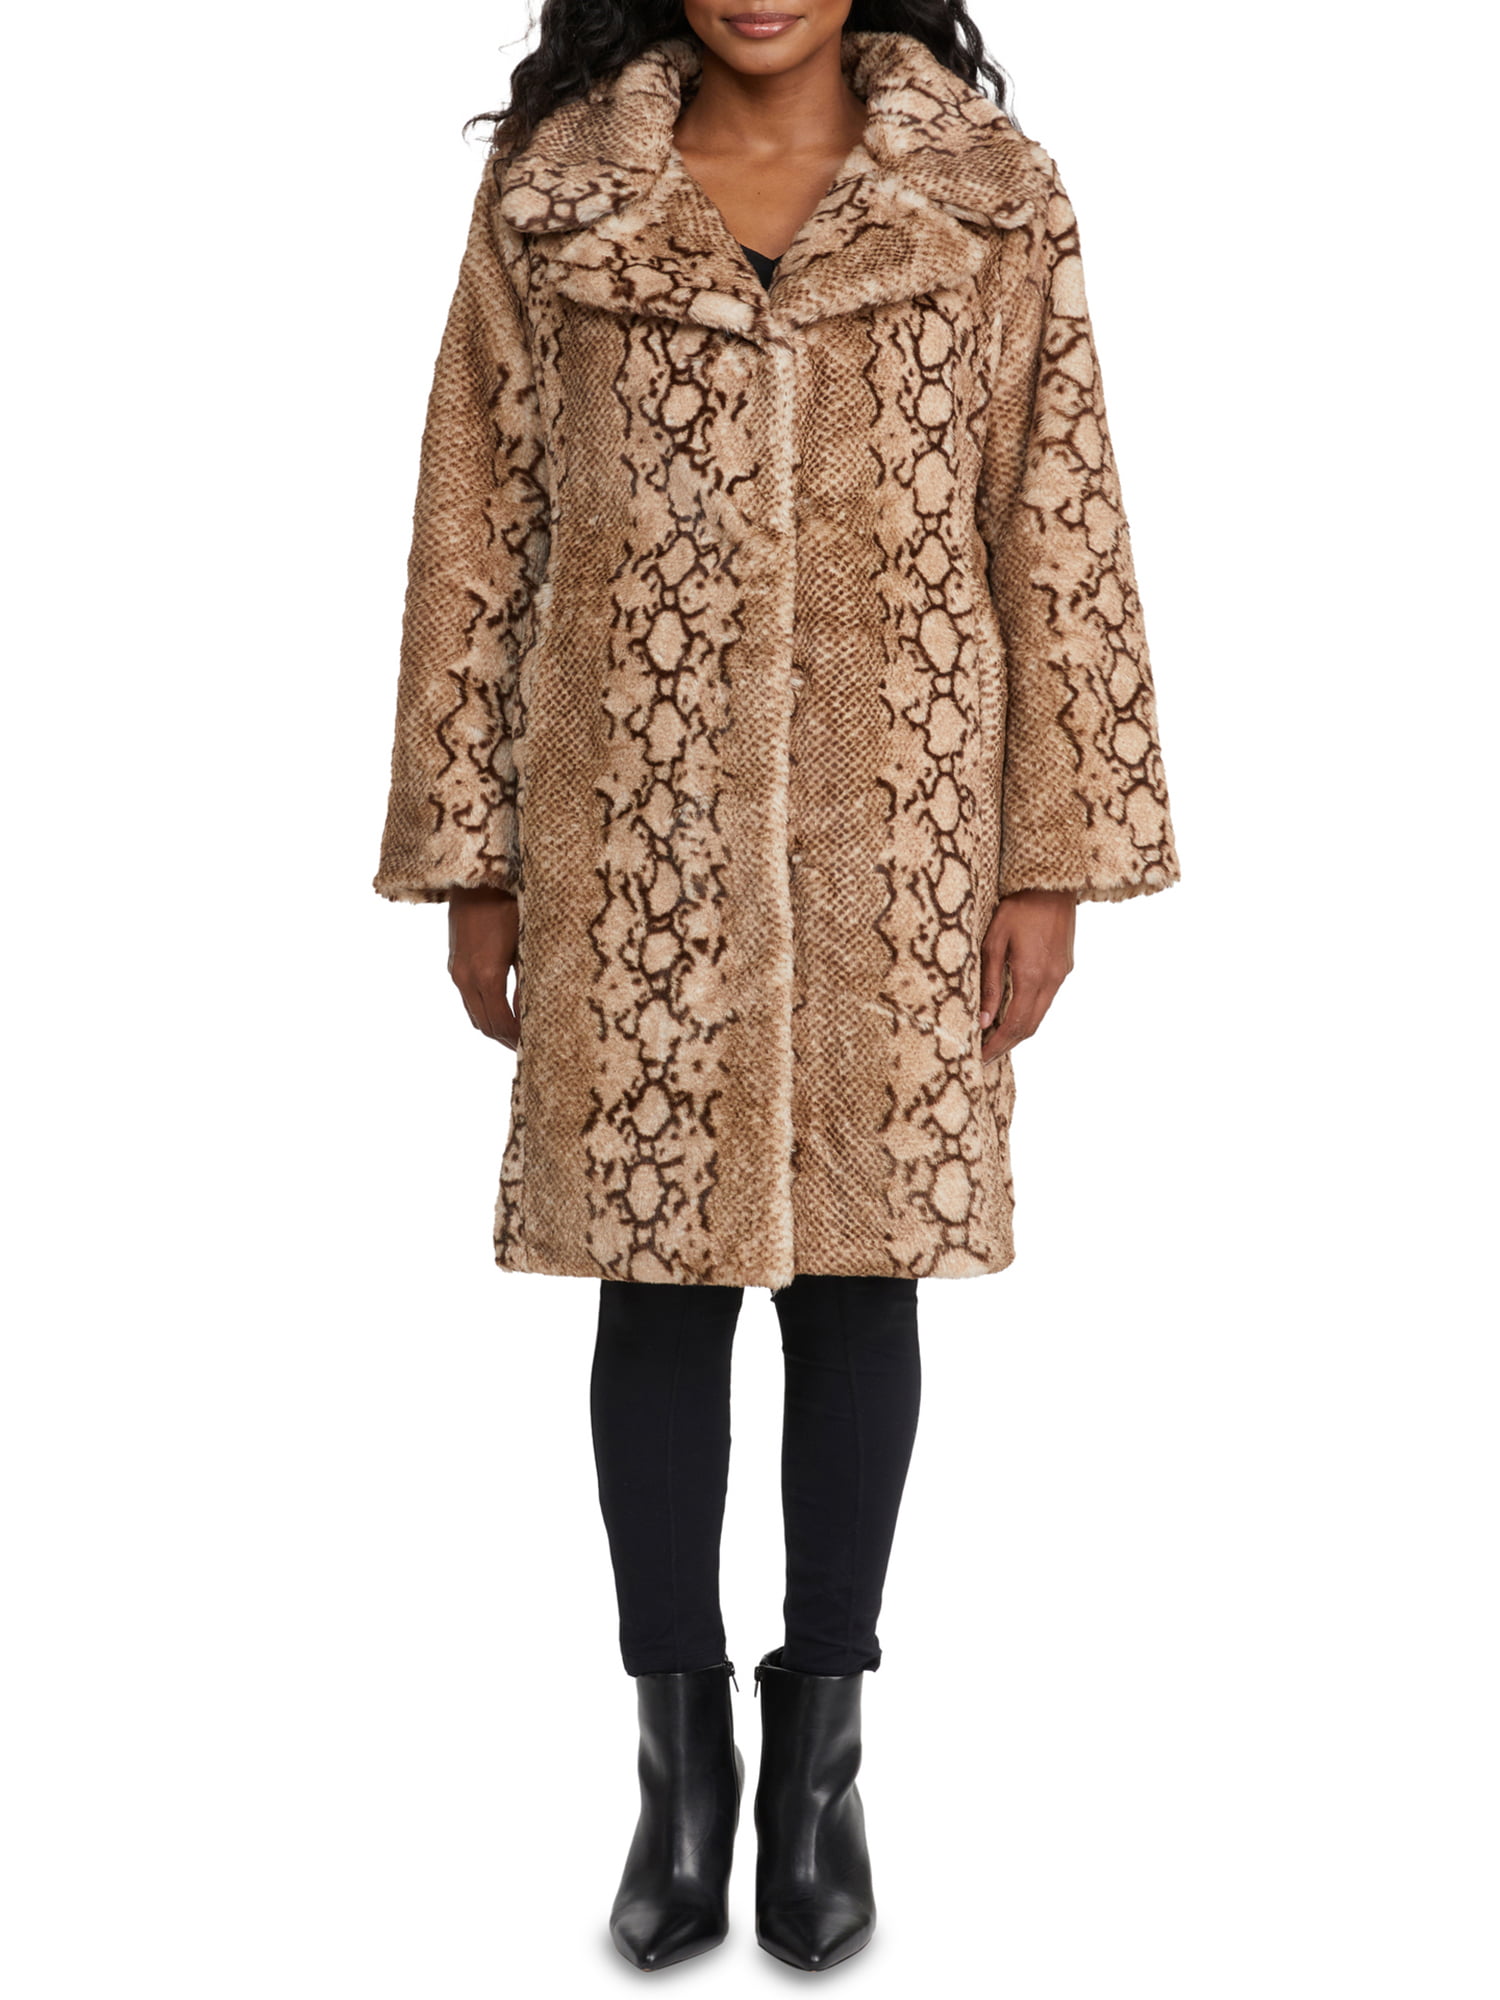 Badgely Mischka Women's Long Faux Fur Coat - Walmart.com